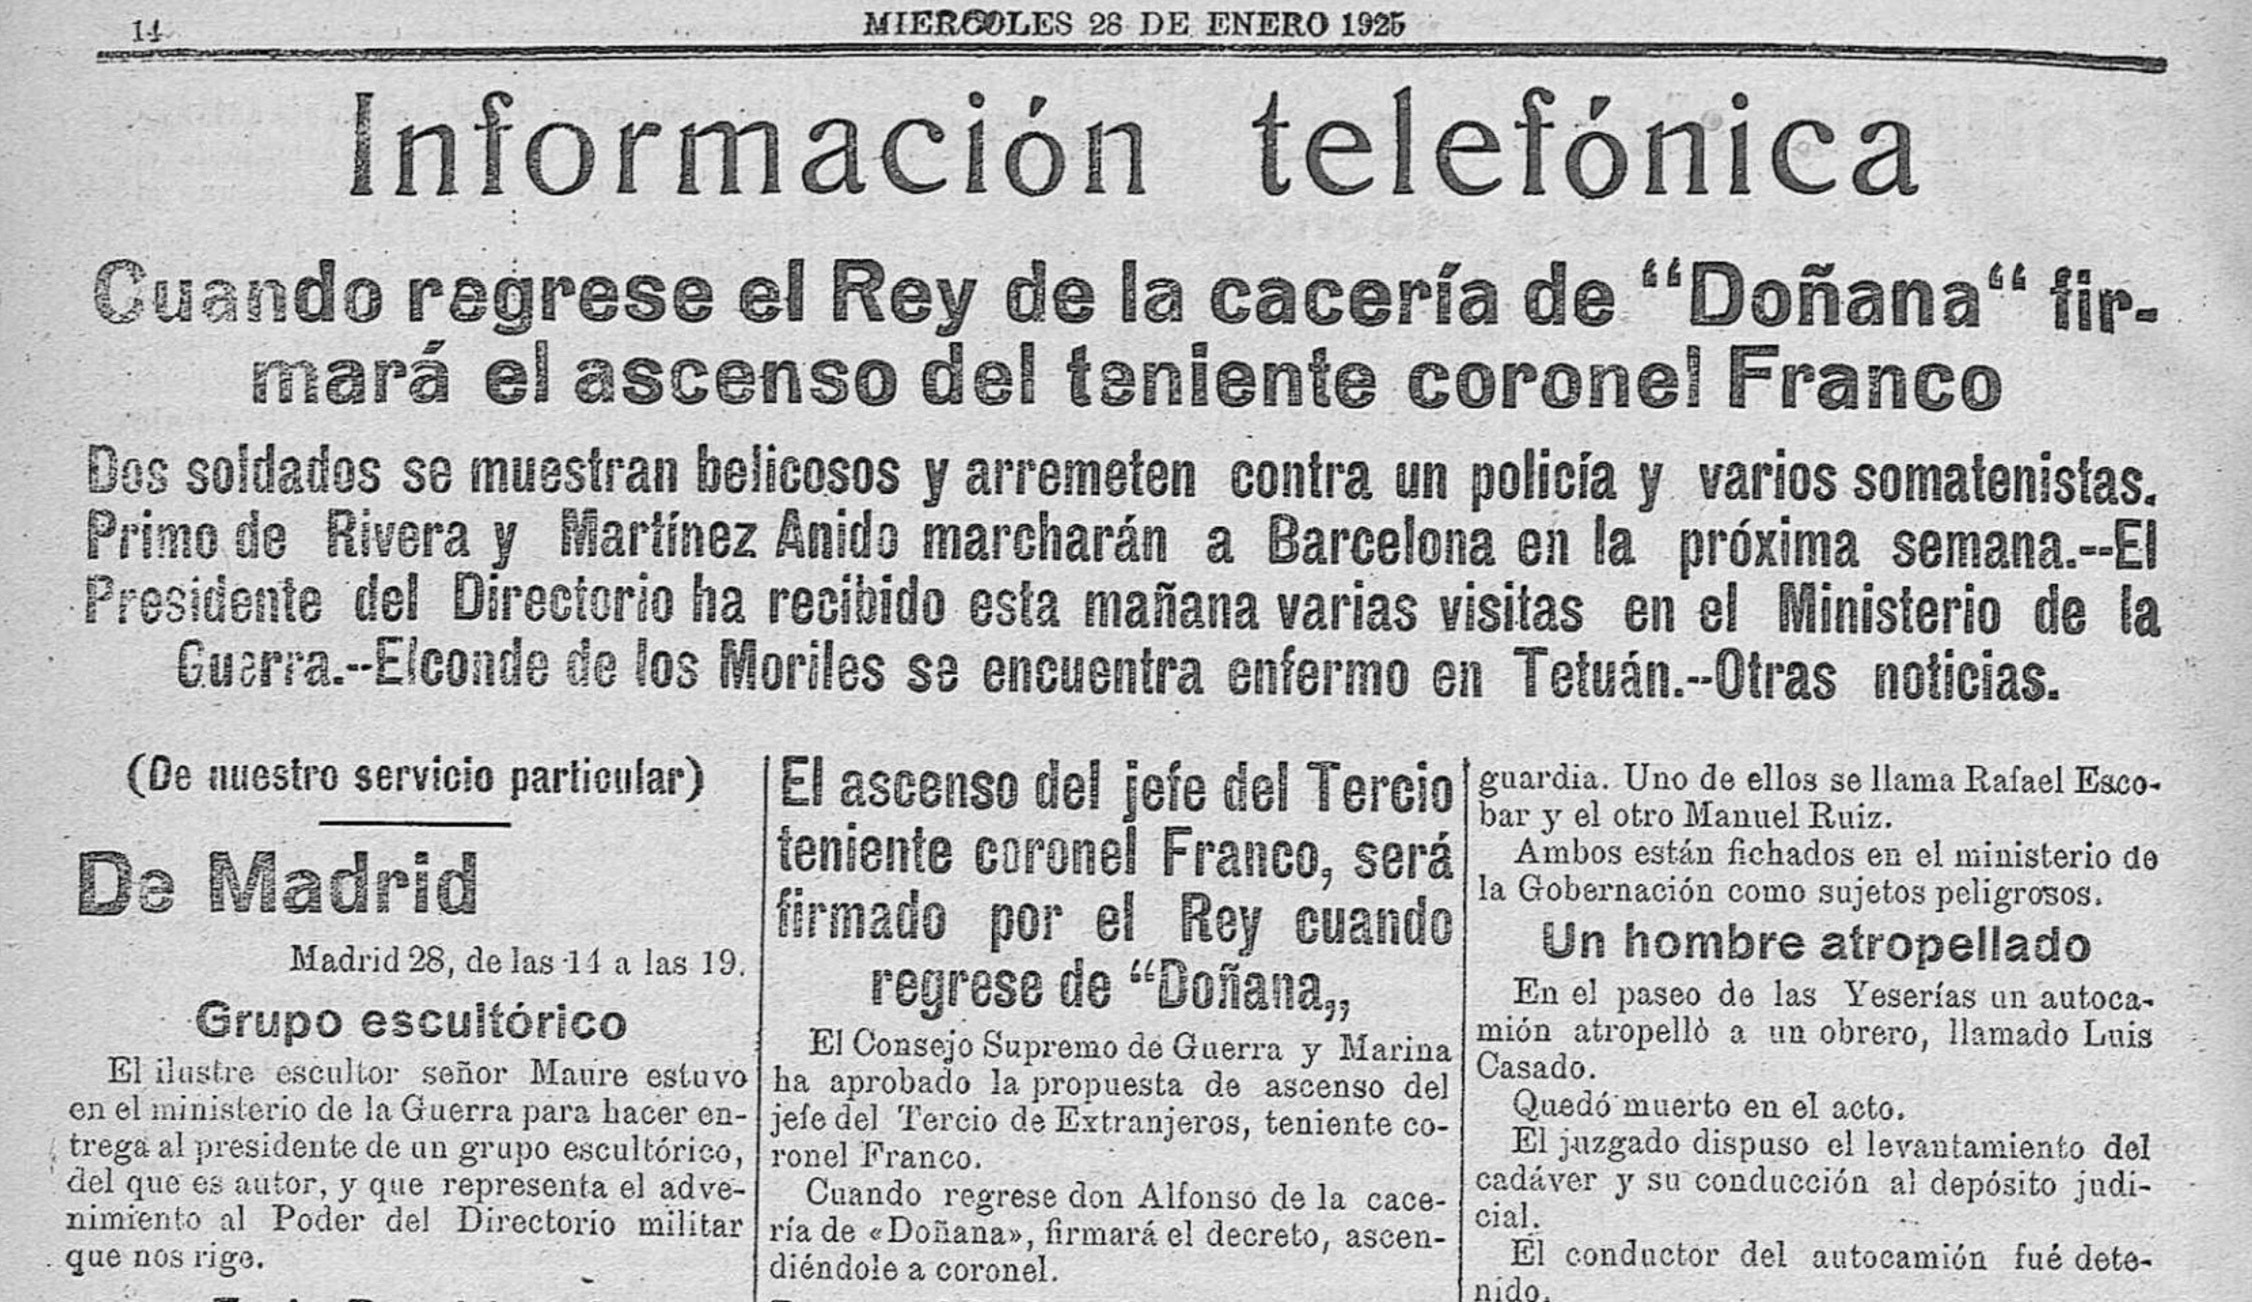 Lo que la prensa nacional dijo del legionario Francisco Franco, 1921-1925 (II), por Francisco Torres